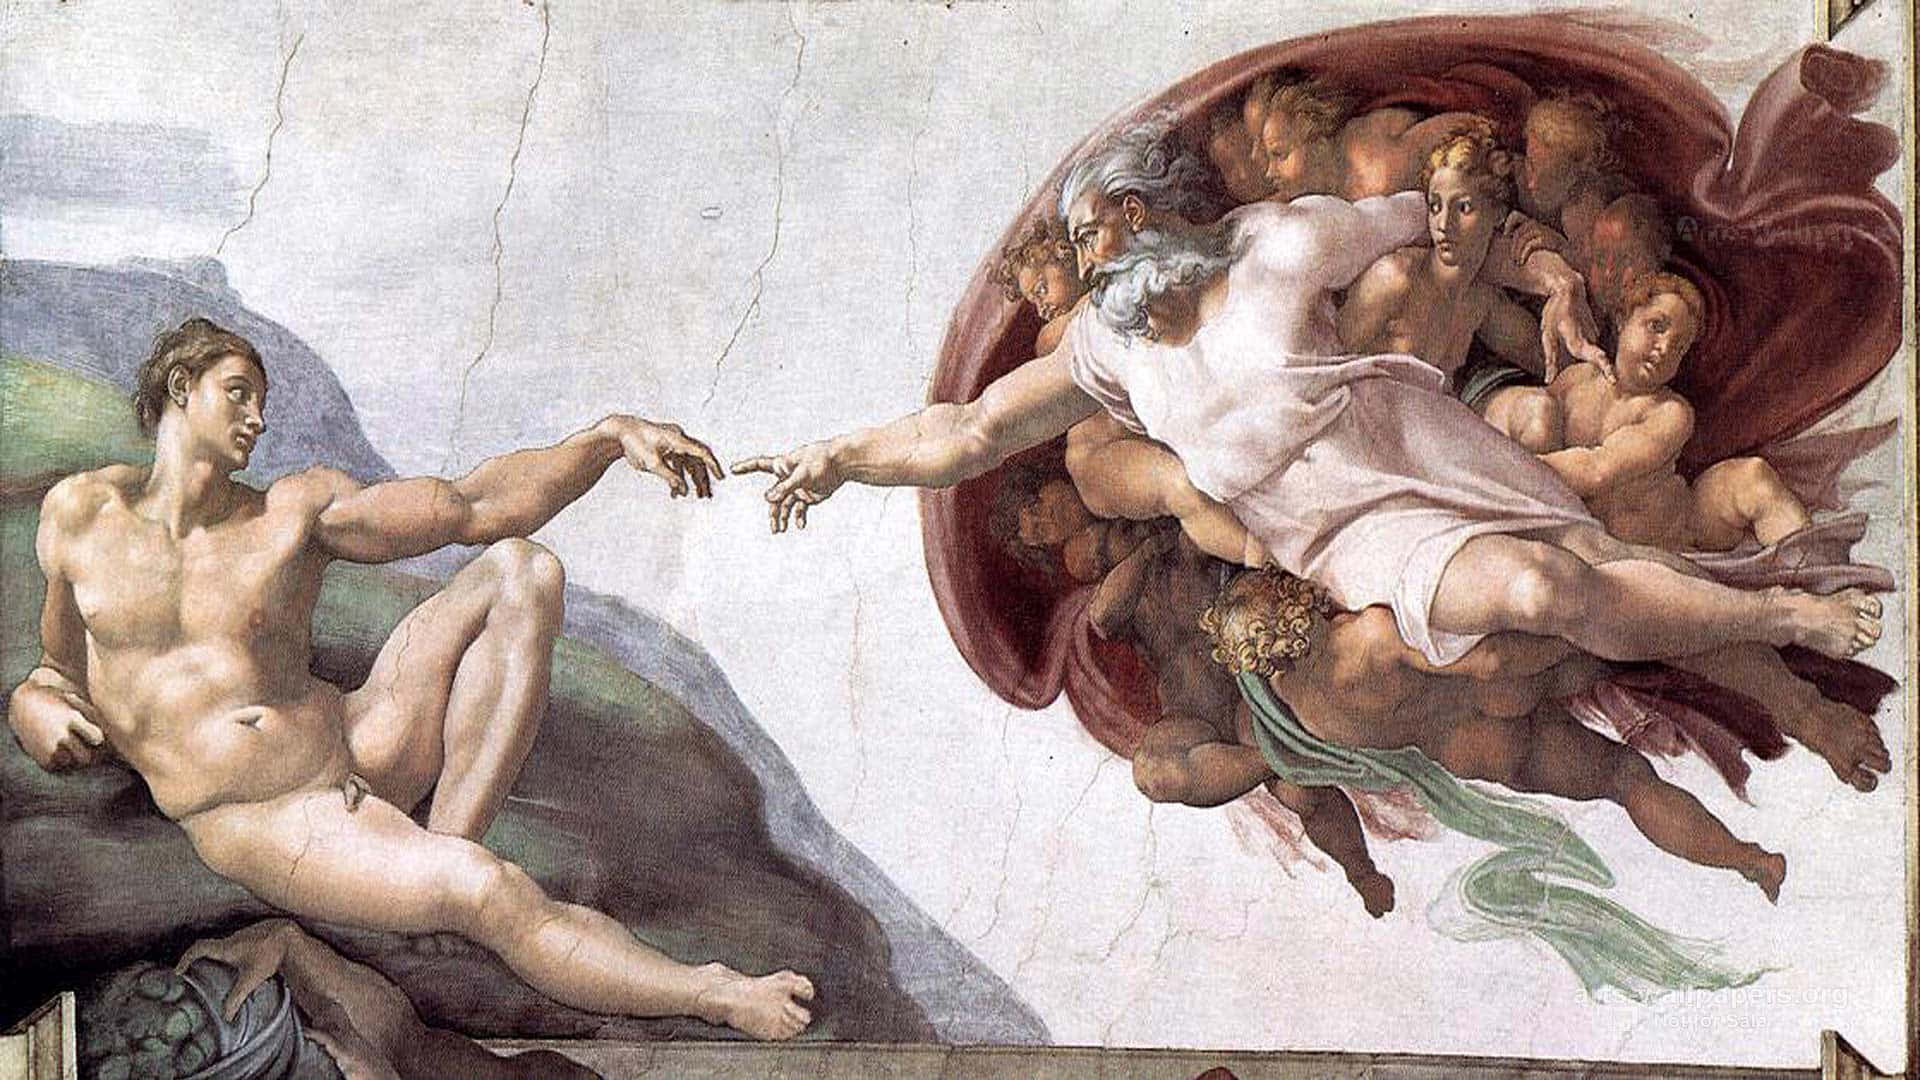 Michelangelosikoniska Skapelsen Av Adam, För Närvarande Under Restaurering För Framtida Generationer. Wallpaper